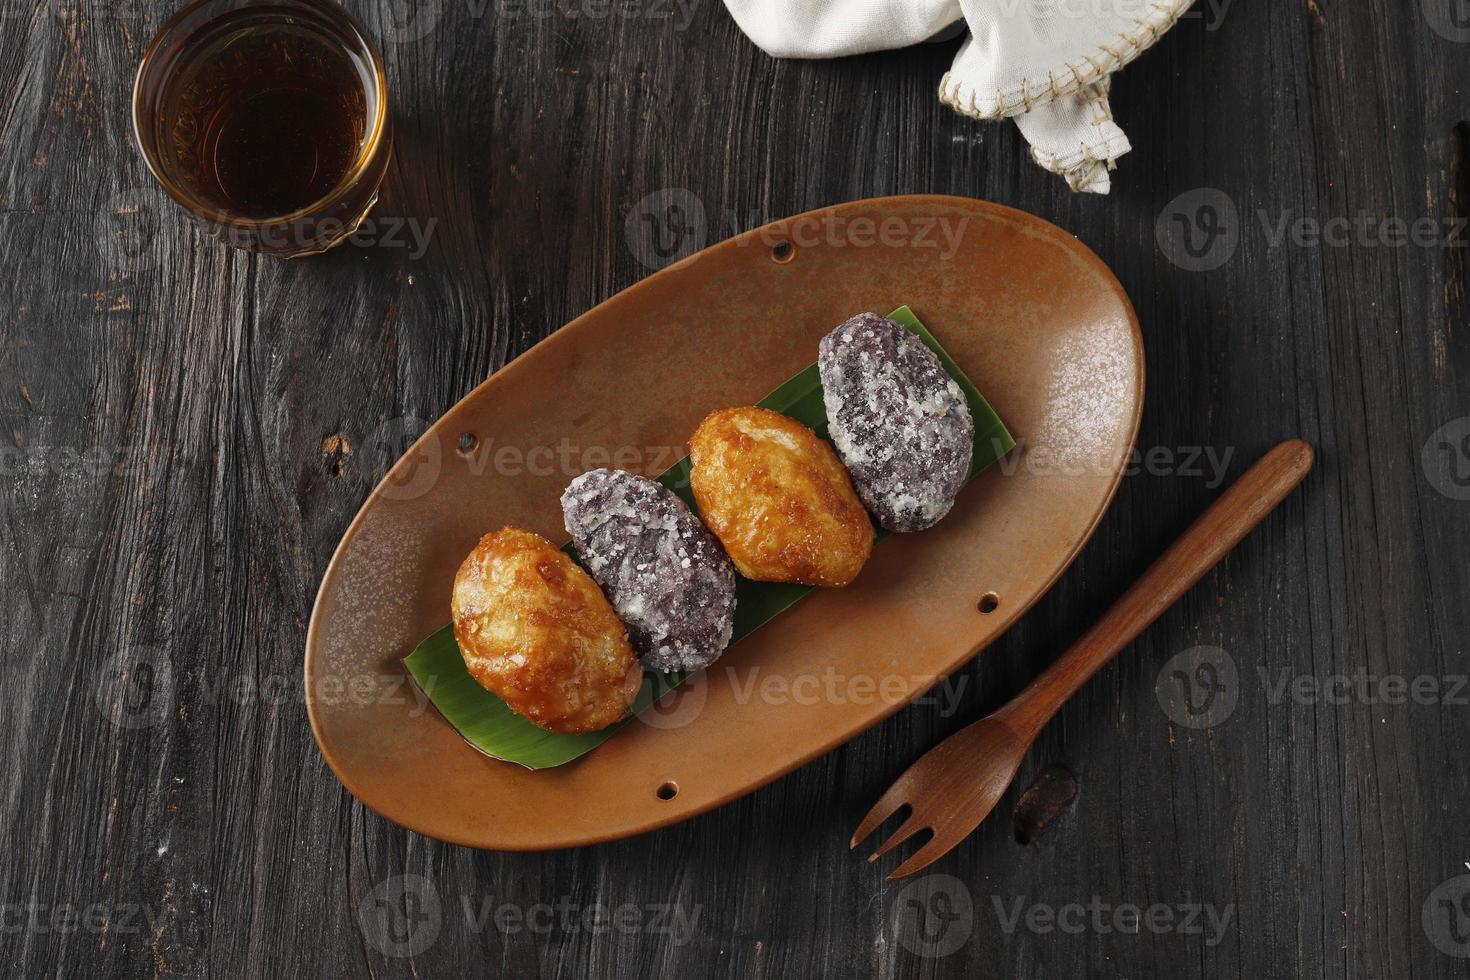 gemblong oder kue gemblong ist ein klebriger reiskuchen mit flüssigem palmzucker, beliebtes indonesisches straßenessen. foto